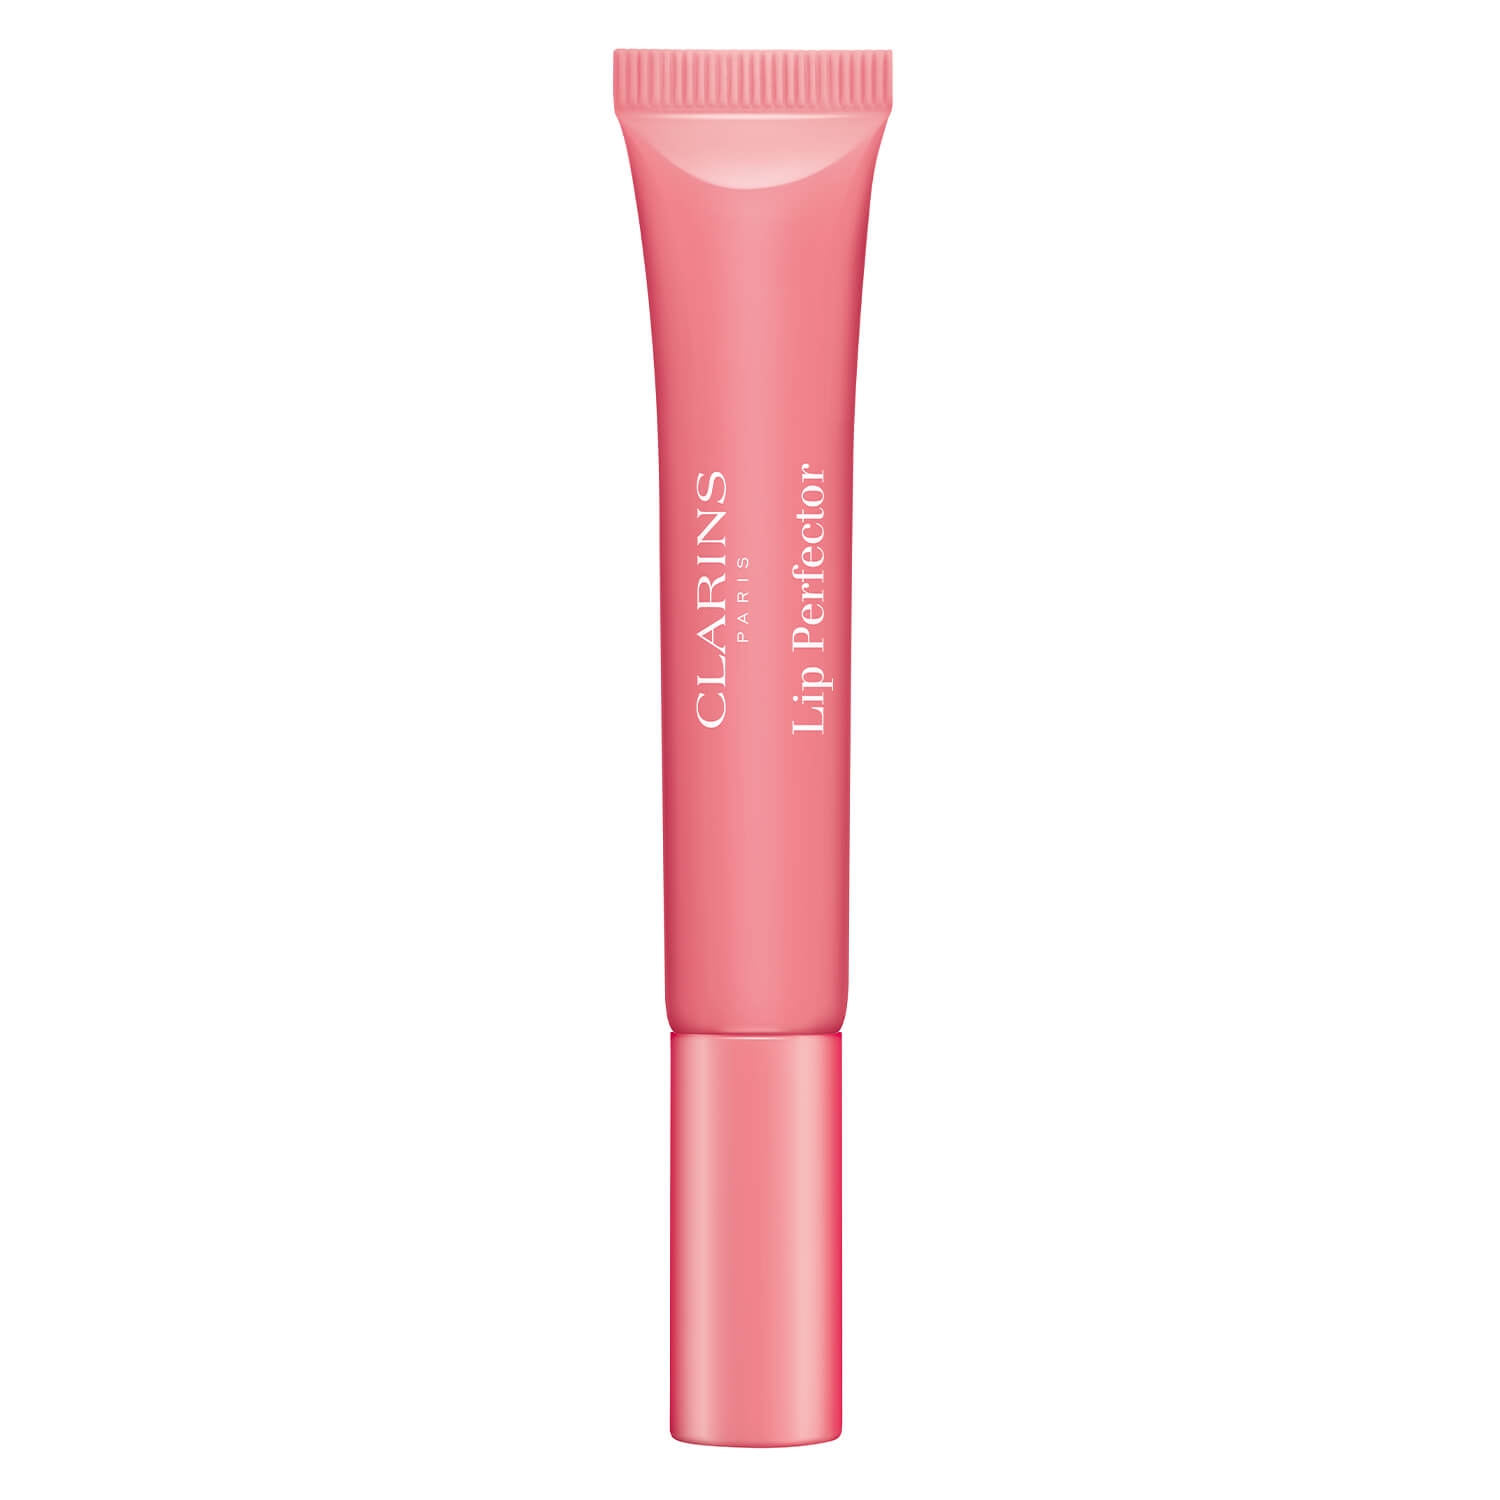 Produktbild von Lip Perfector - Rosé Shimmer 01